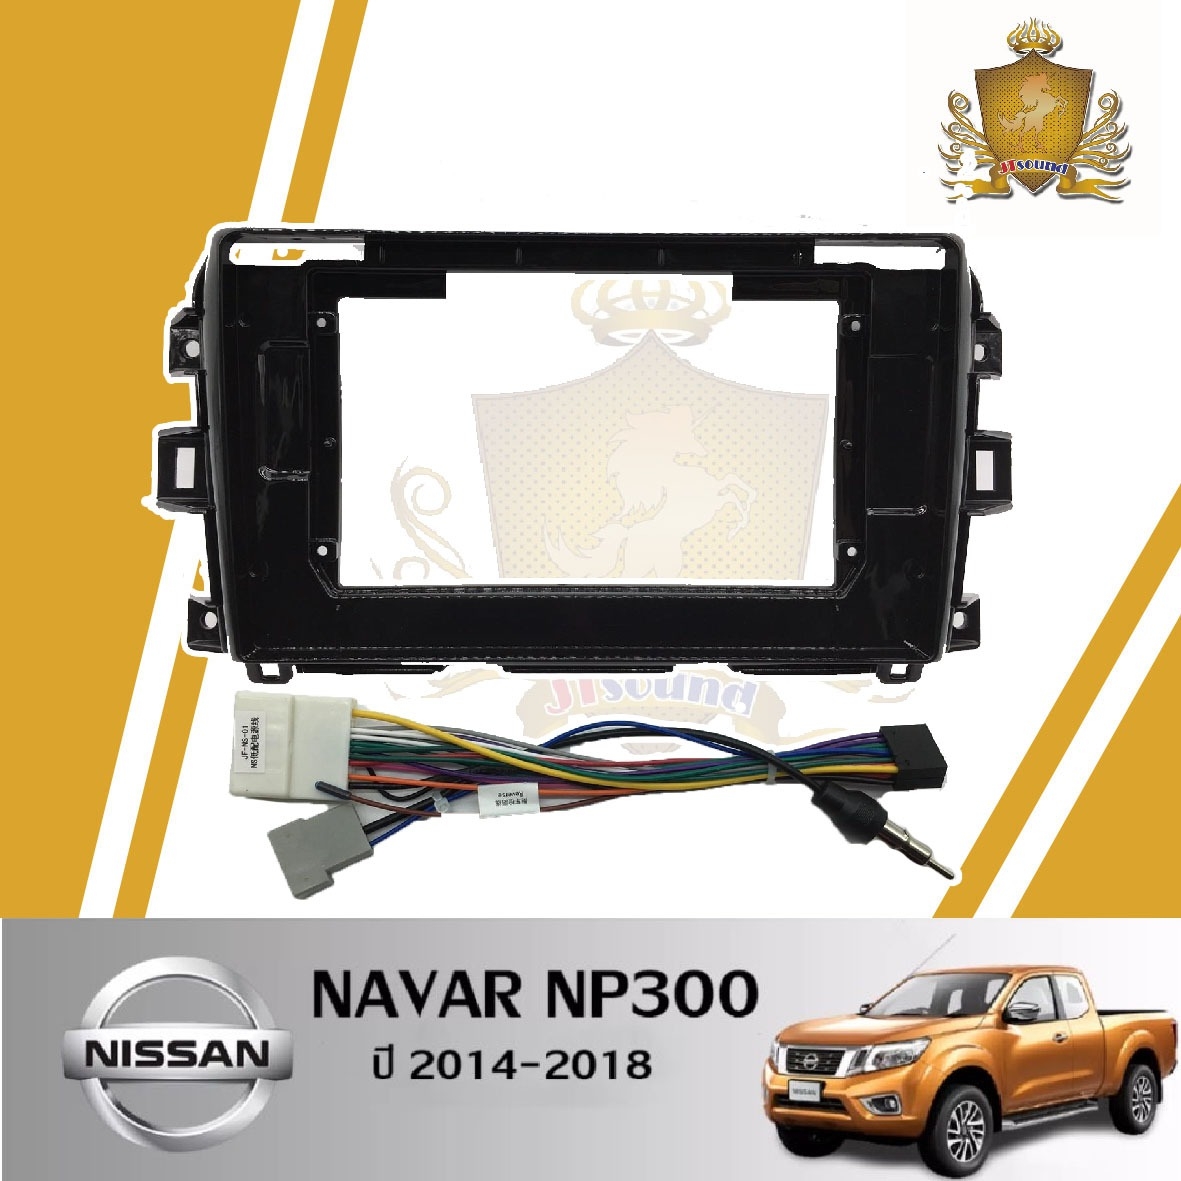 JTSOUND หน้ากากวิทยุ NISSAN NAVAR NP300 ปี 2014-2018 ใช้สำหรับขนาดหน้าจอ 10 นิ้ว + พร้อมปลั๊กต่อตรงรุ่น